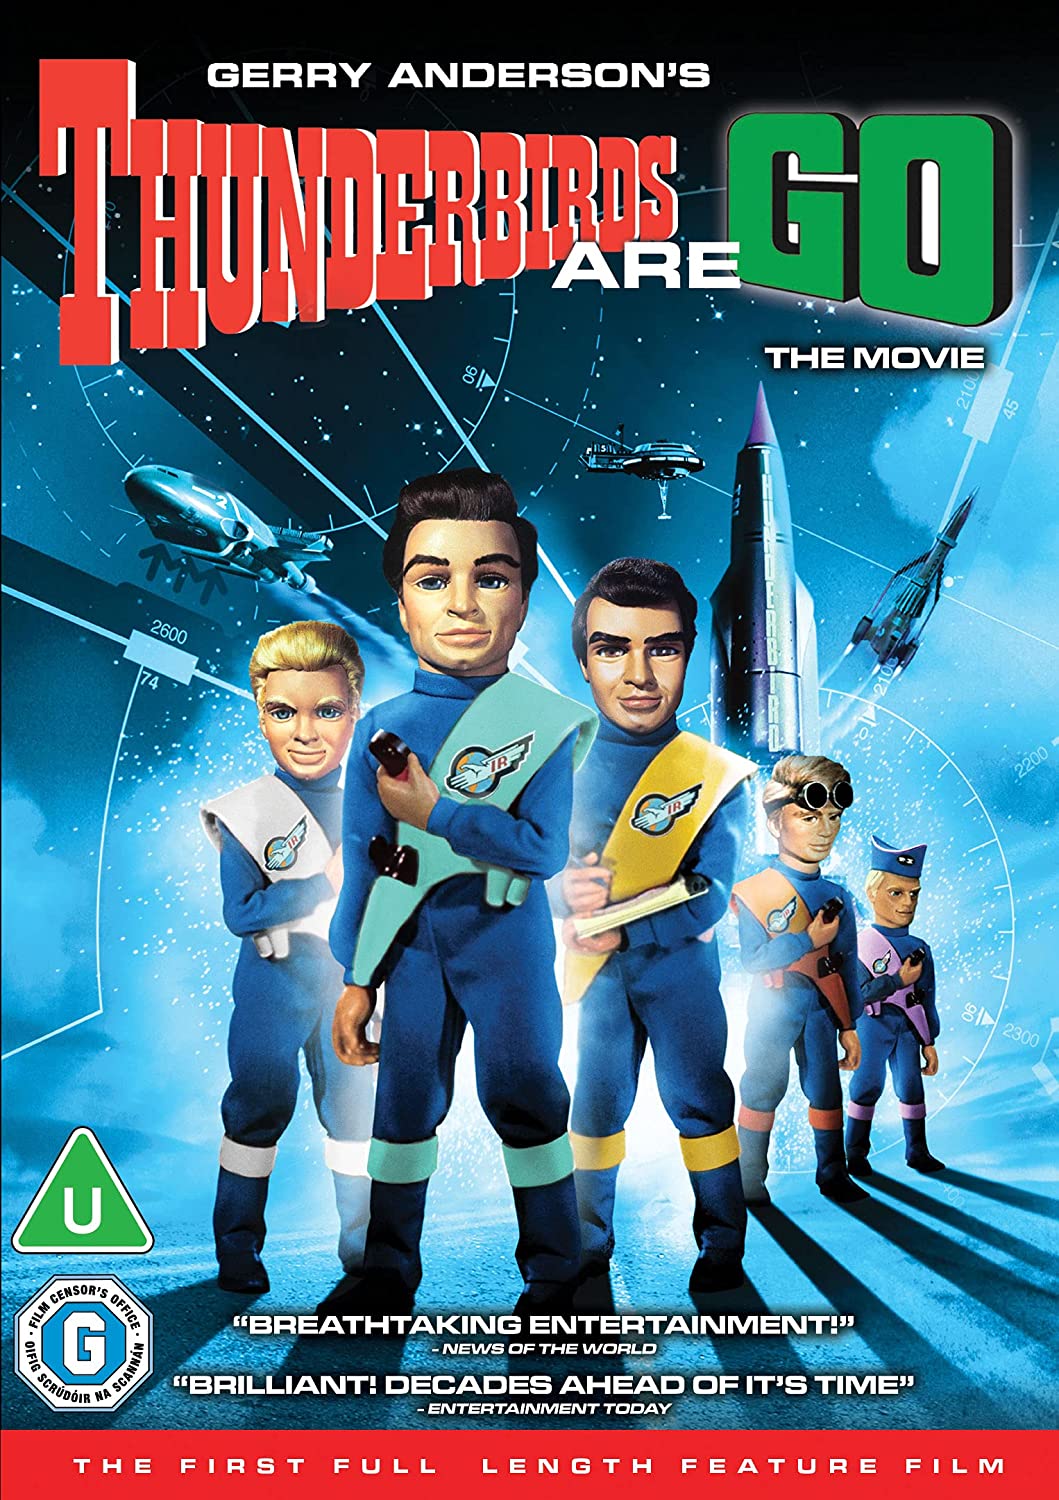 Thunderbirds and Go [2021] [DVD]